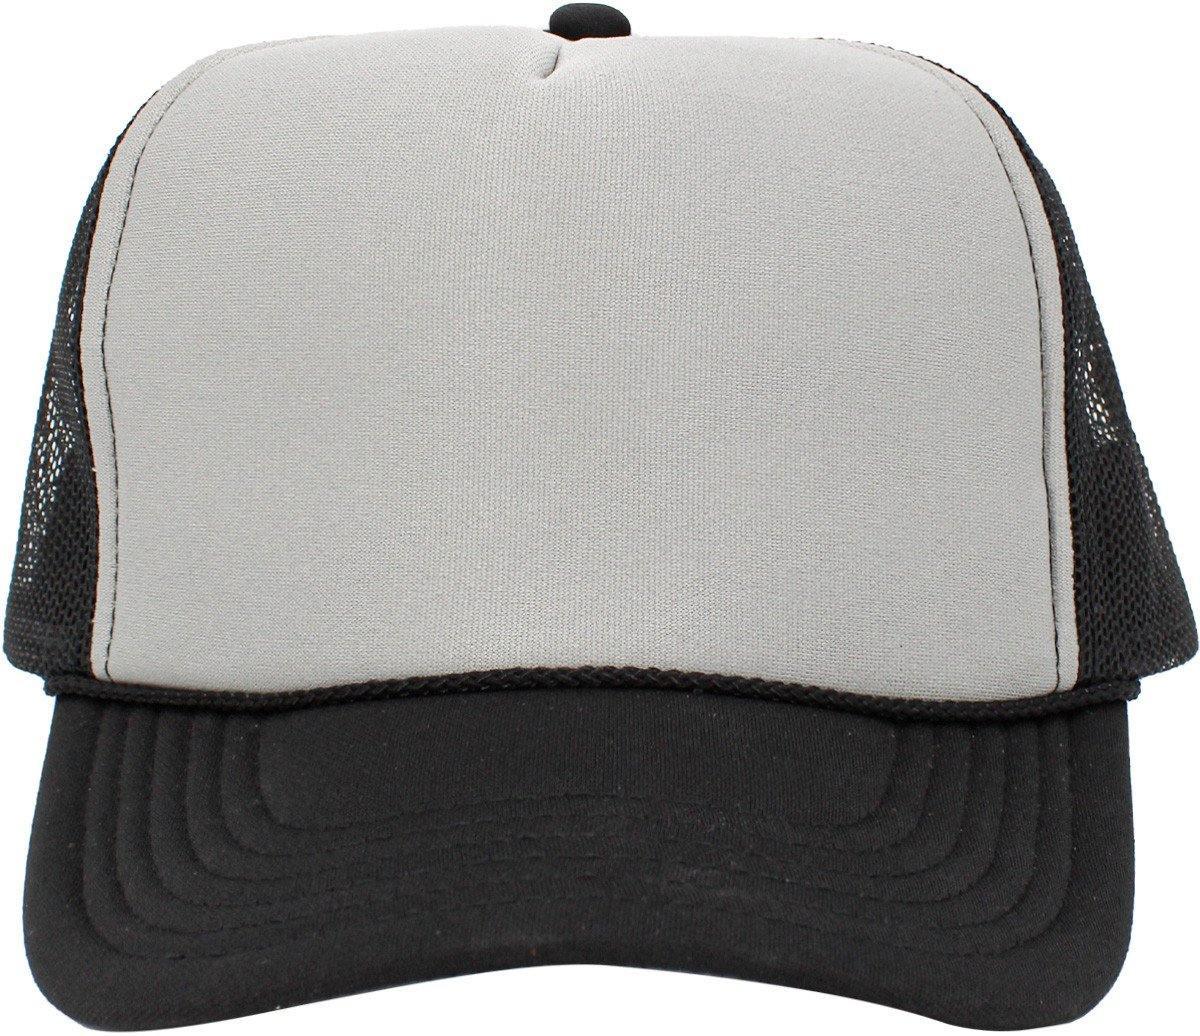 Blank Foam Trucker Hats Black/Grey